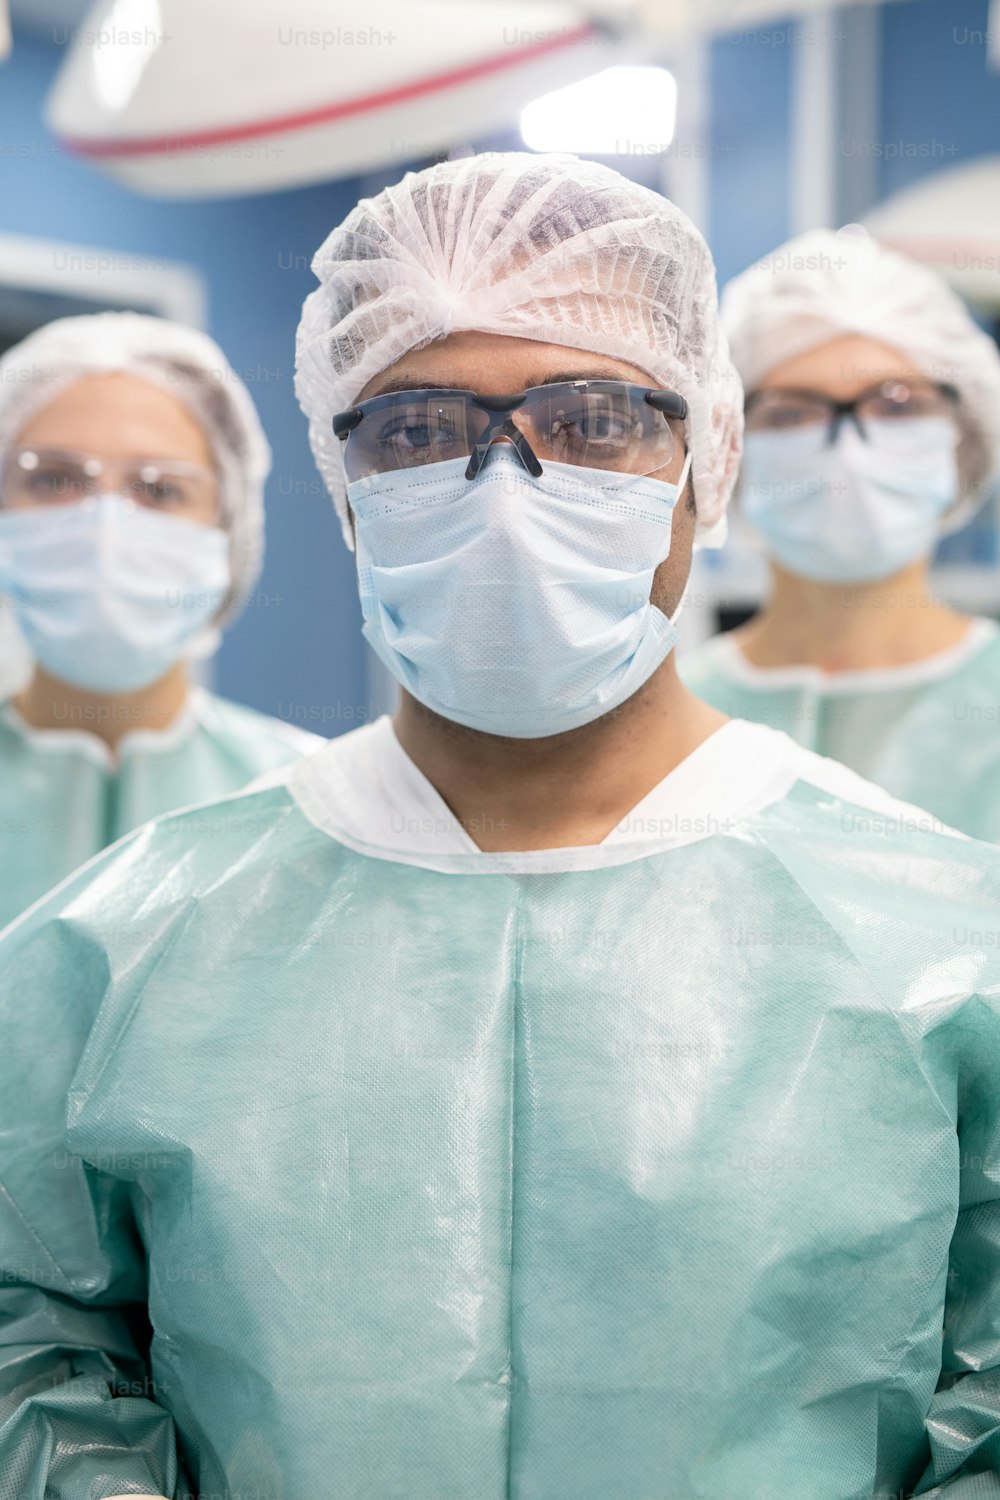 젊은 전문 남성 외과 의사와 보호복을 입고 마스크와 안경을 쓴 두 명의 조수가 수술실에 서 있다